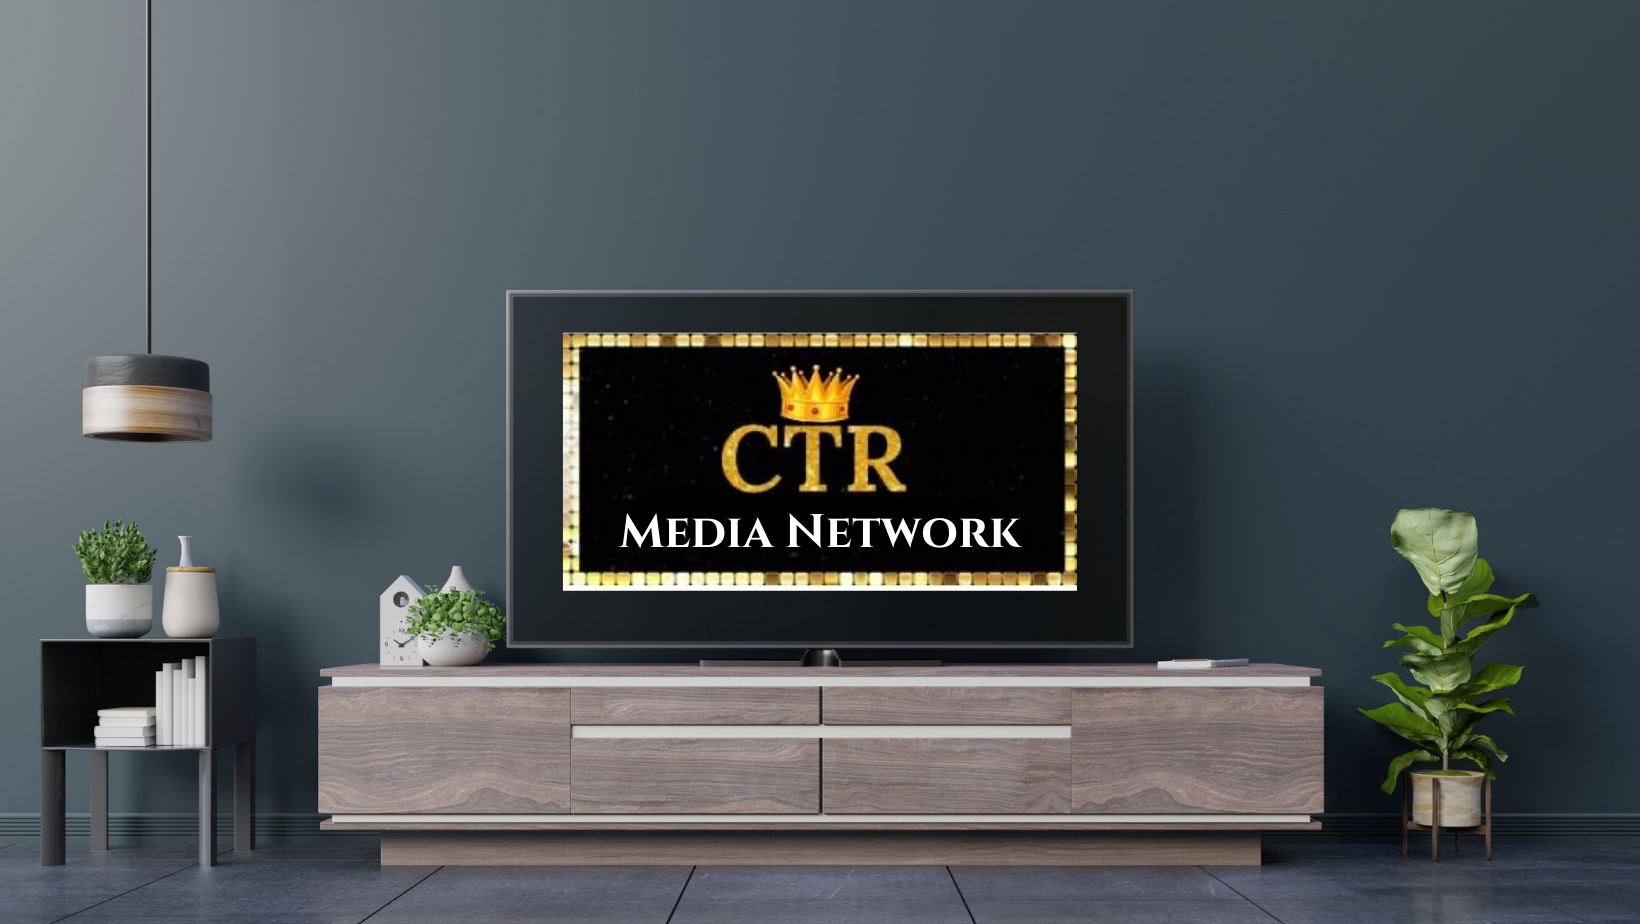 CTR Media Network